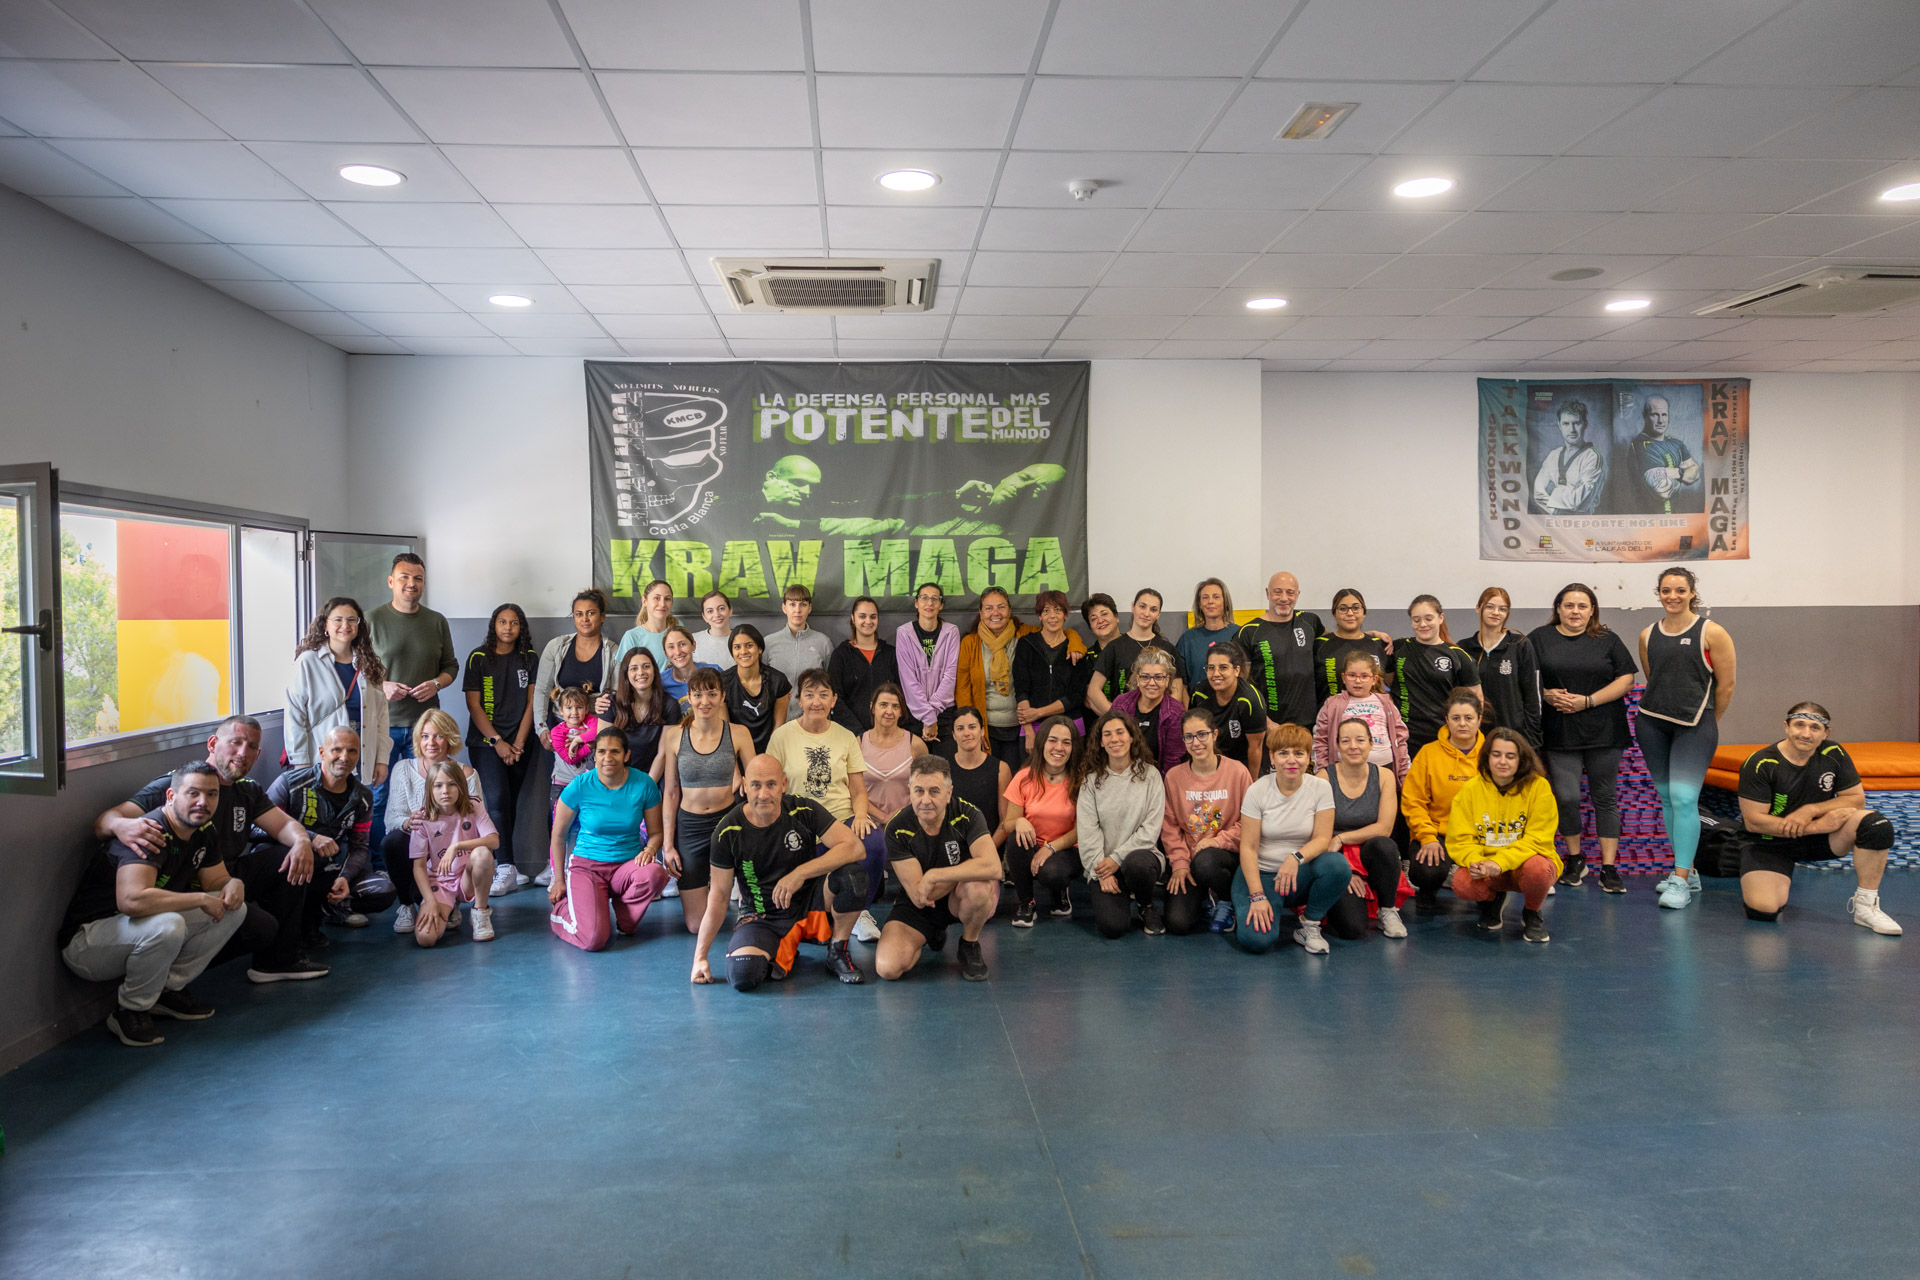 Éxito de participación en el taller de defensa personal para mujeres impartido por el Club Krav Maga